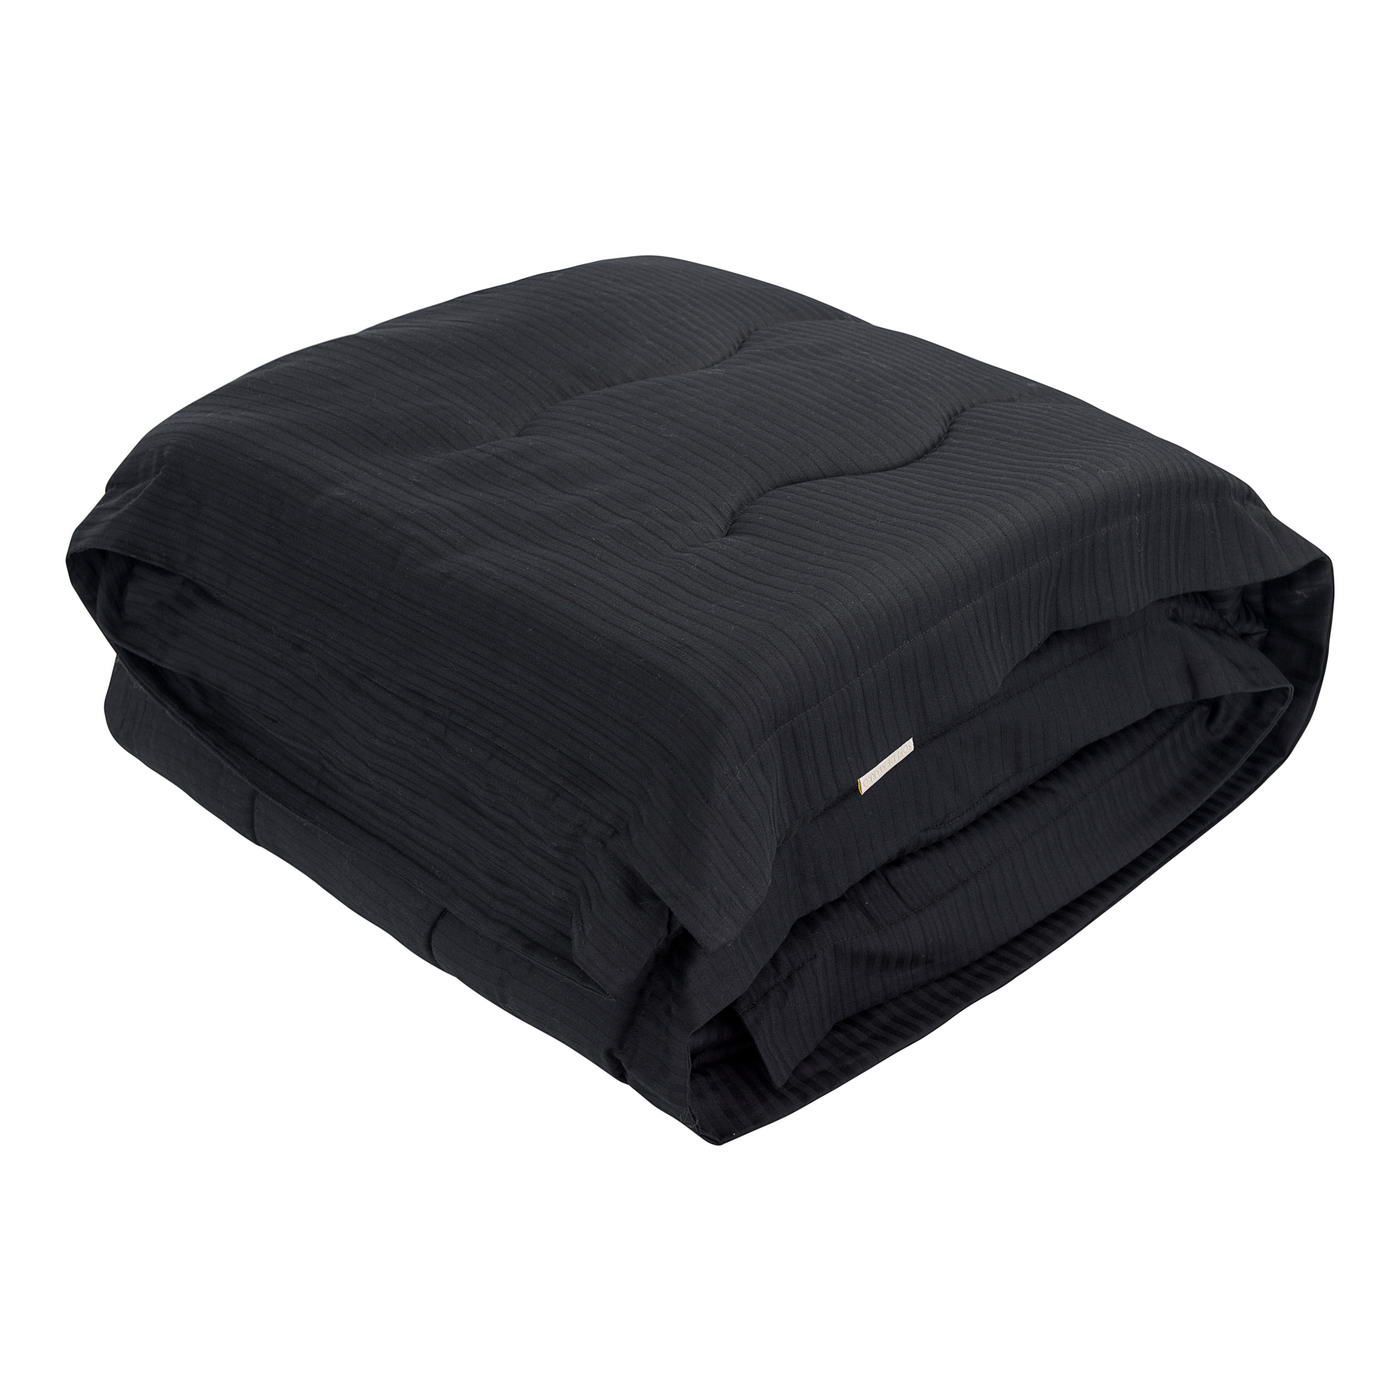 Одеяло-покрывало Тиффани цвет: черный (155х220 см), размер 155х220 см sofi973244 Одеяло-покрывало Тиффани цвет: черный (155х220 см) - фото 1